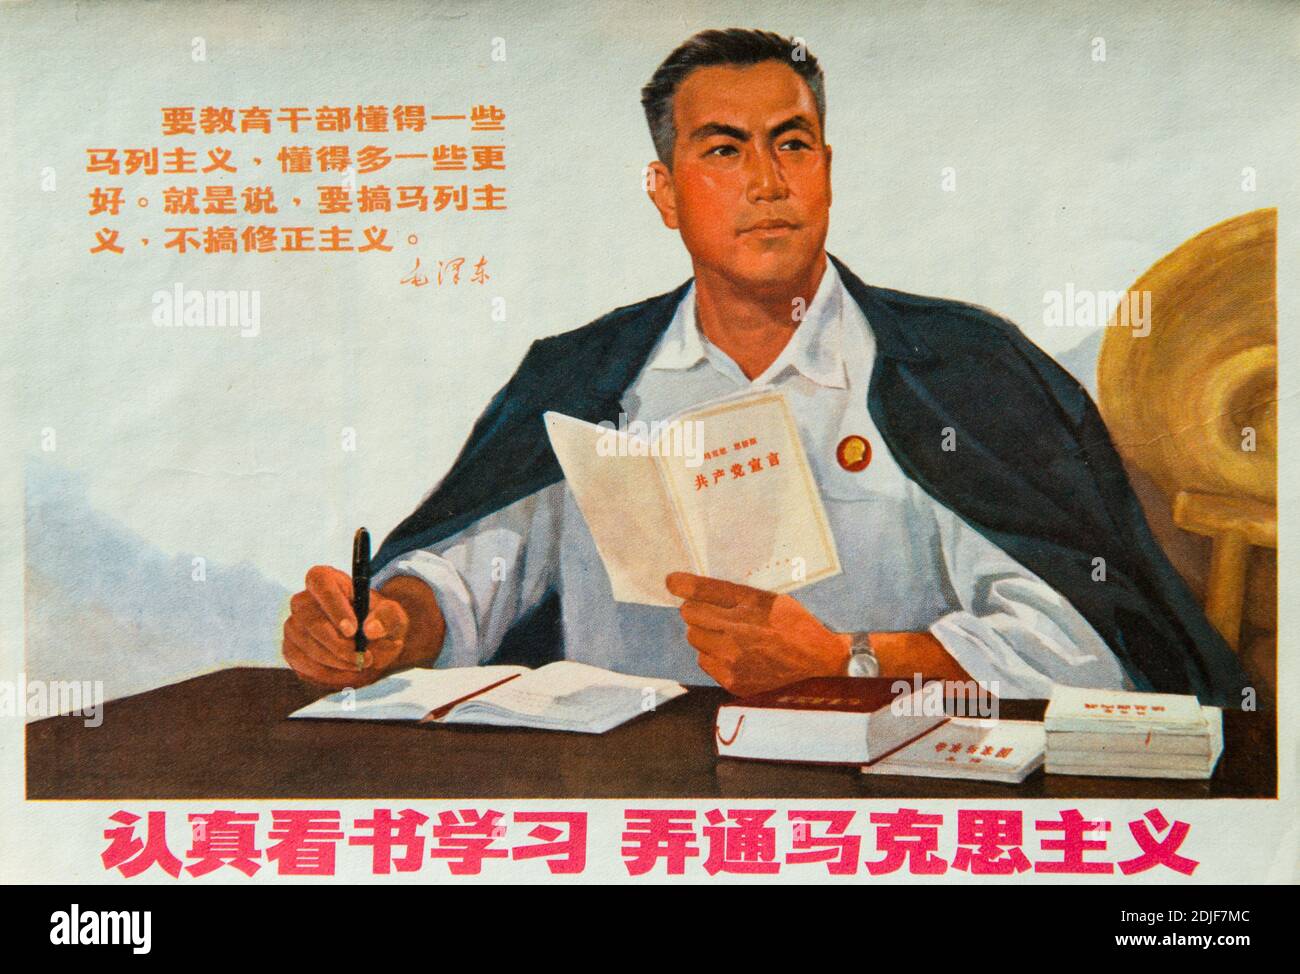 Un verdadero cartel de propaganda durante la Revolución Cultural en China. Los personajes chinos leen: Lean y estudien cuidadosamente para entender el marxismo. Foto de stock